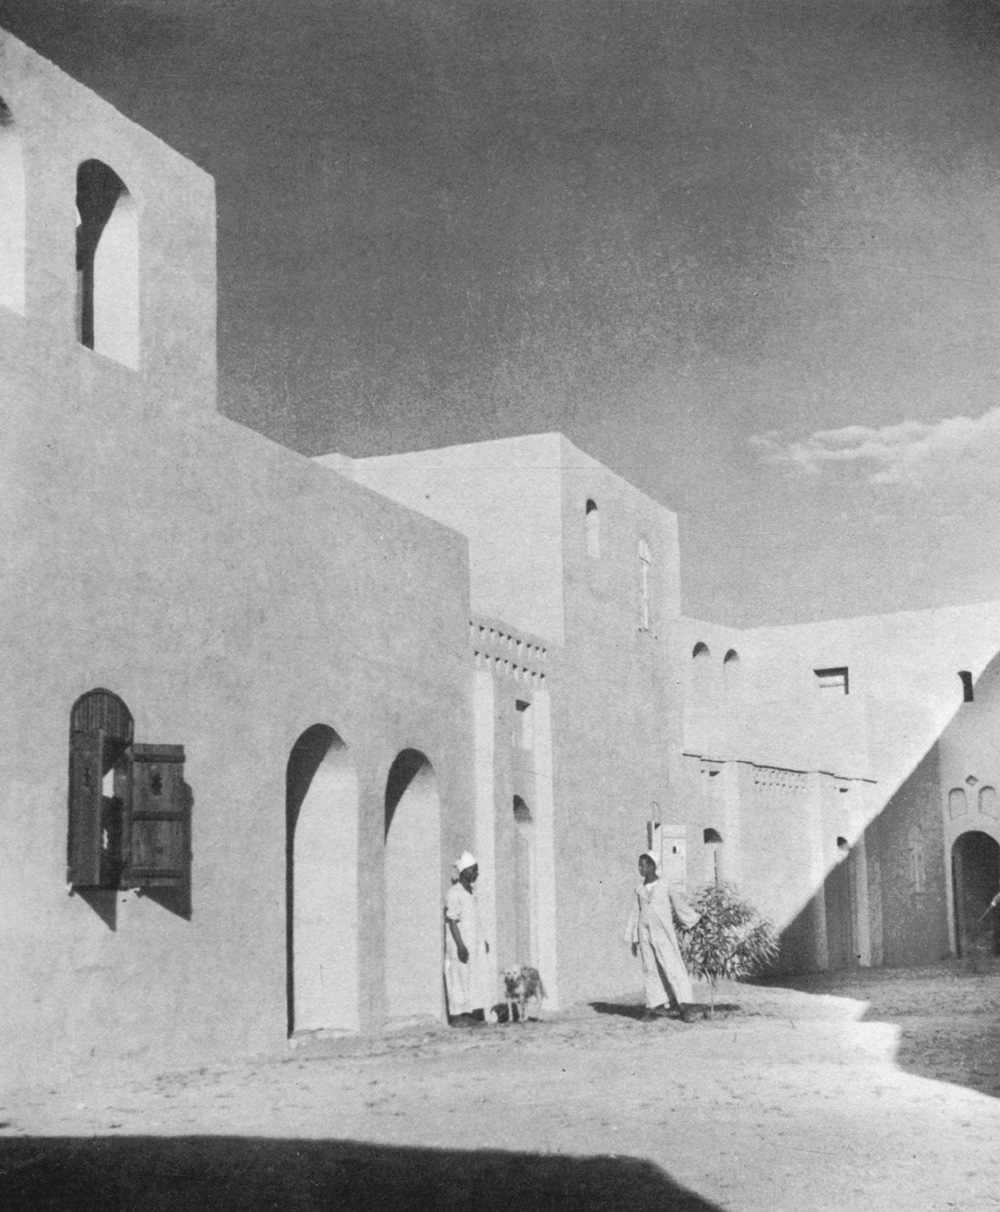 מגזין מקו ועד תרבות / מיזם דיגיטלי ללא צרכי רווח חסן פתחי – ארכיטקט מצרי<br>1989 - 1900  